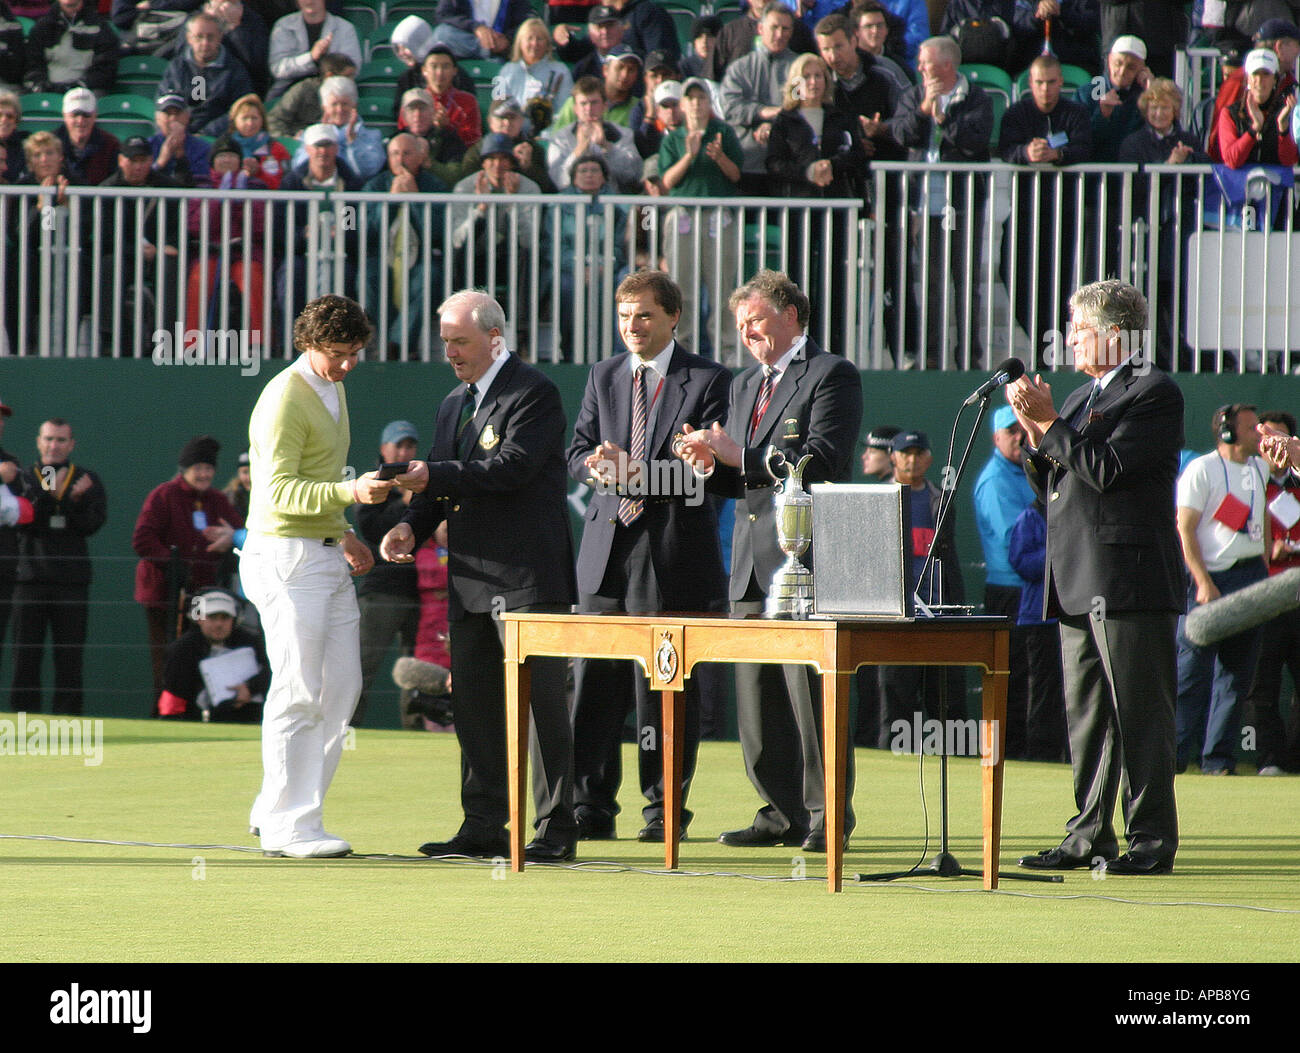 18 jährige Rory McIlroy führt Amateur bei der Open Golf Championship 2007 Carnoustie Schottlands, die Silber-Medaille zu gewinnen Stockfoto